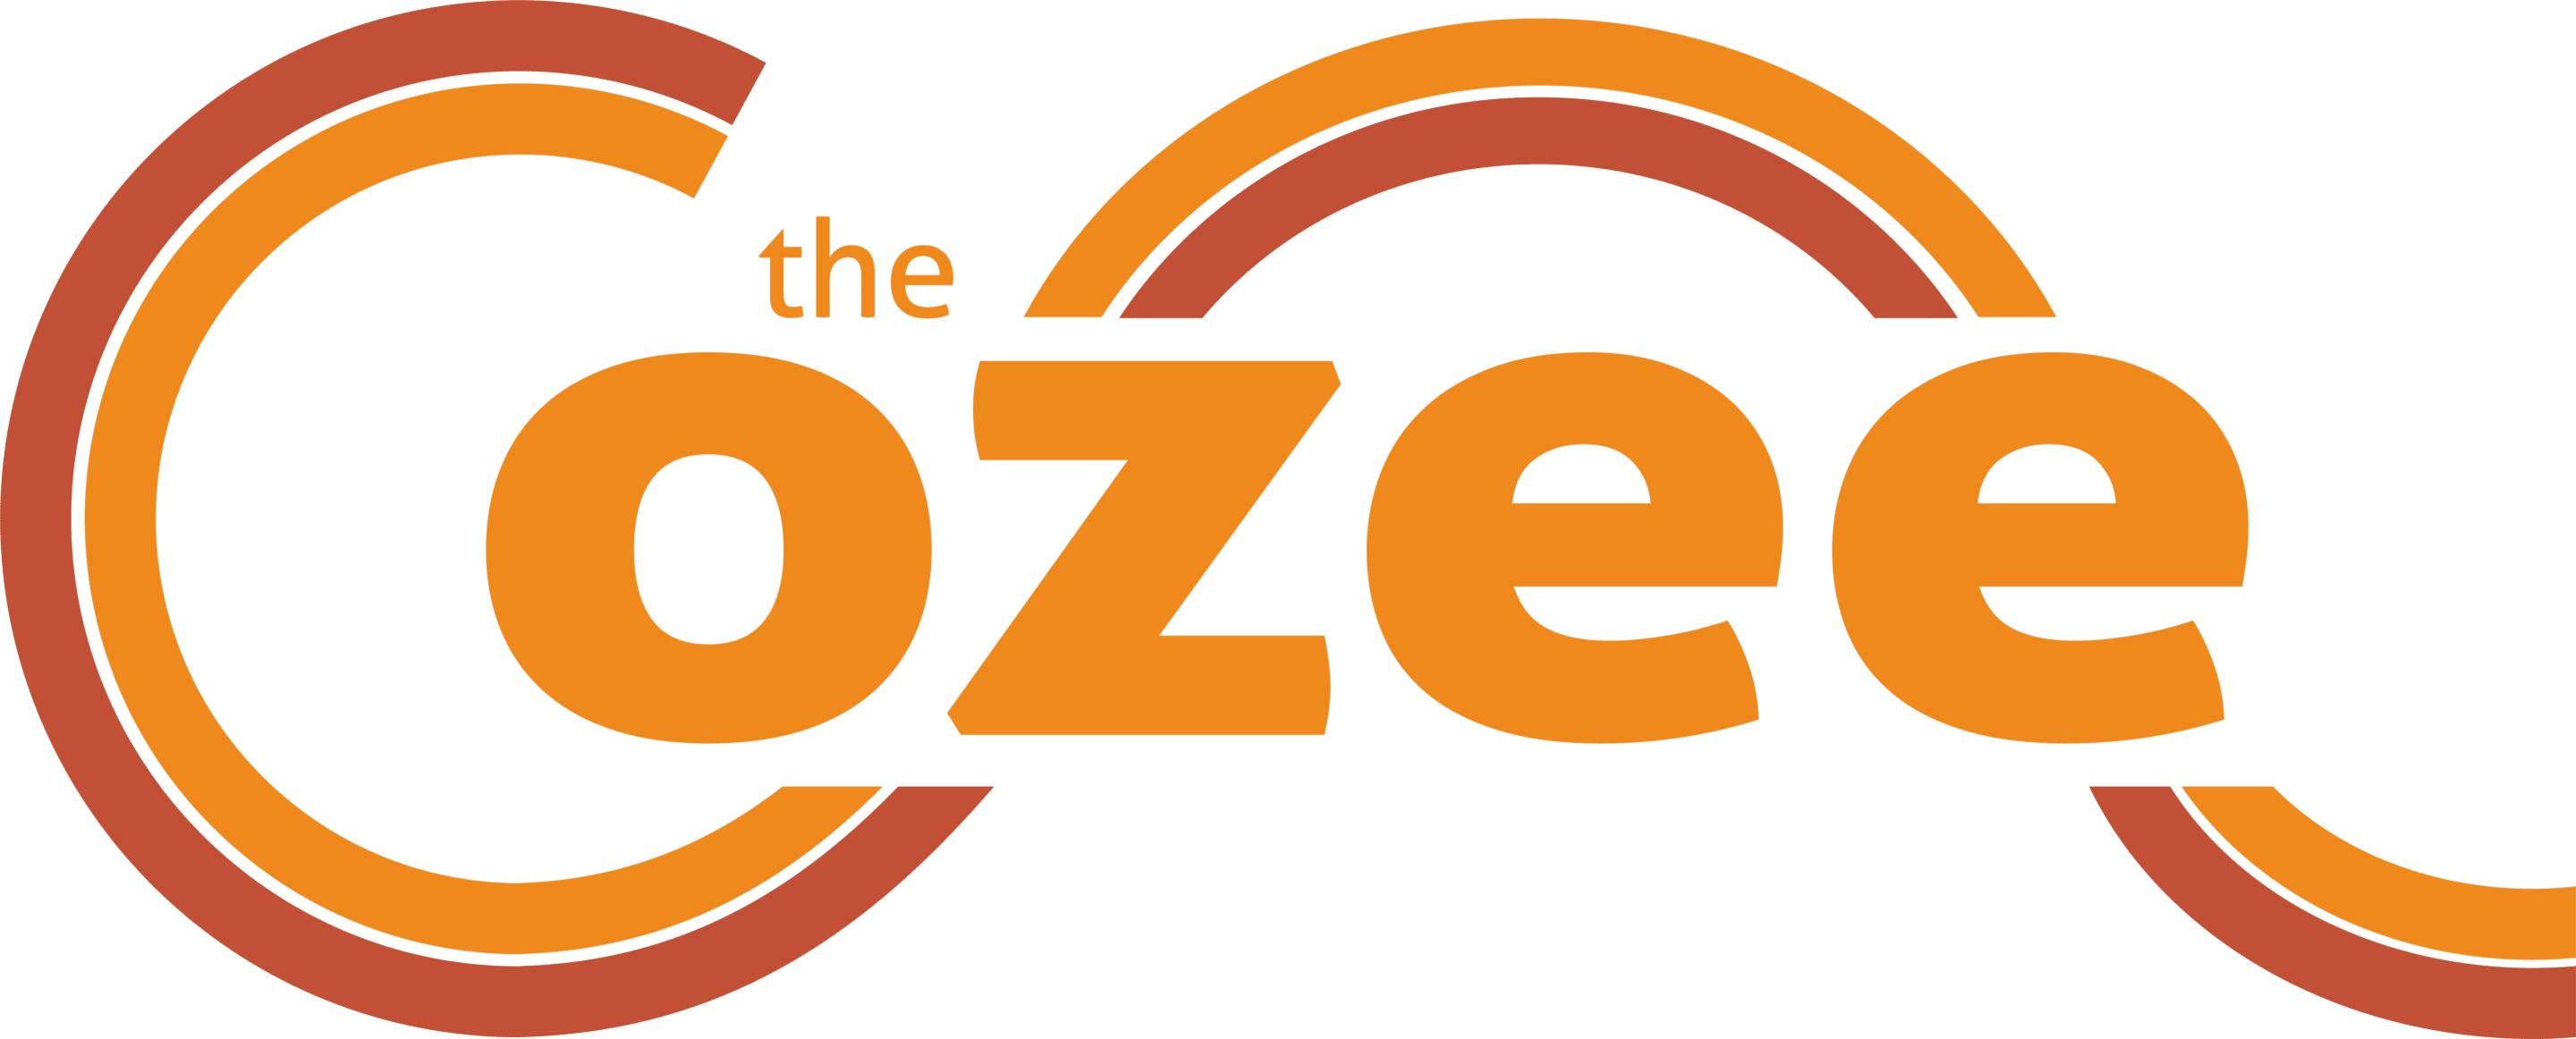 The Cozee Logo